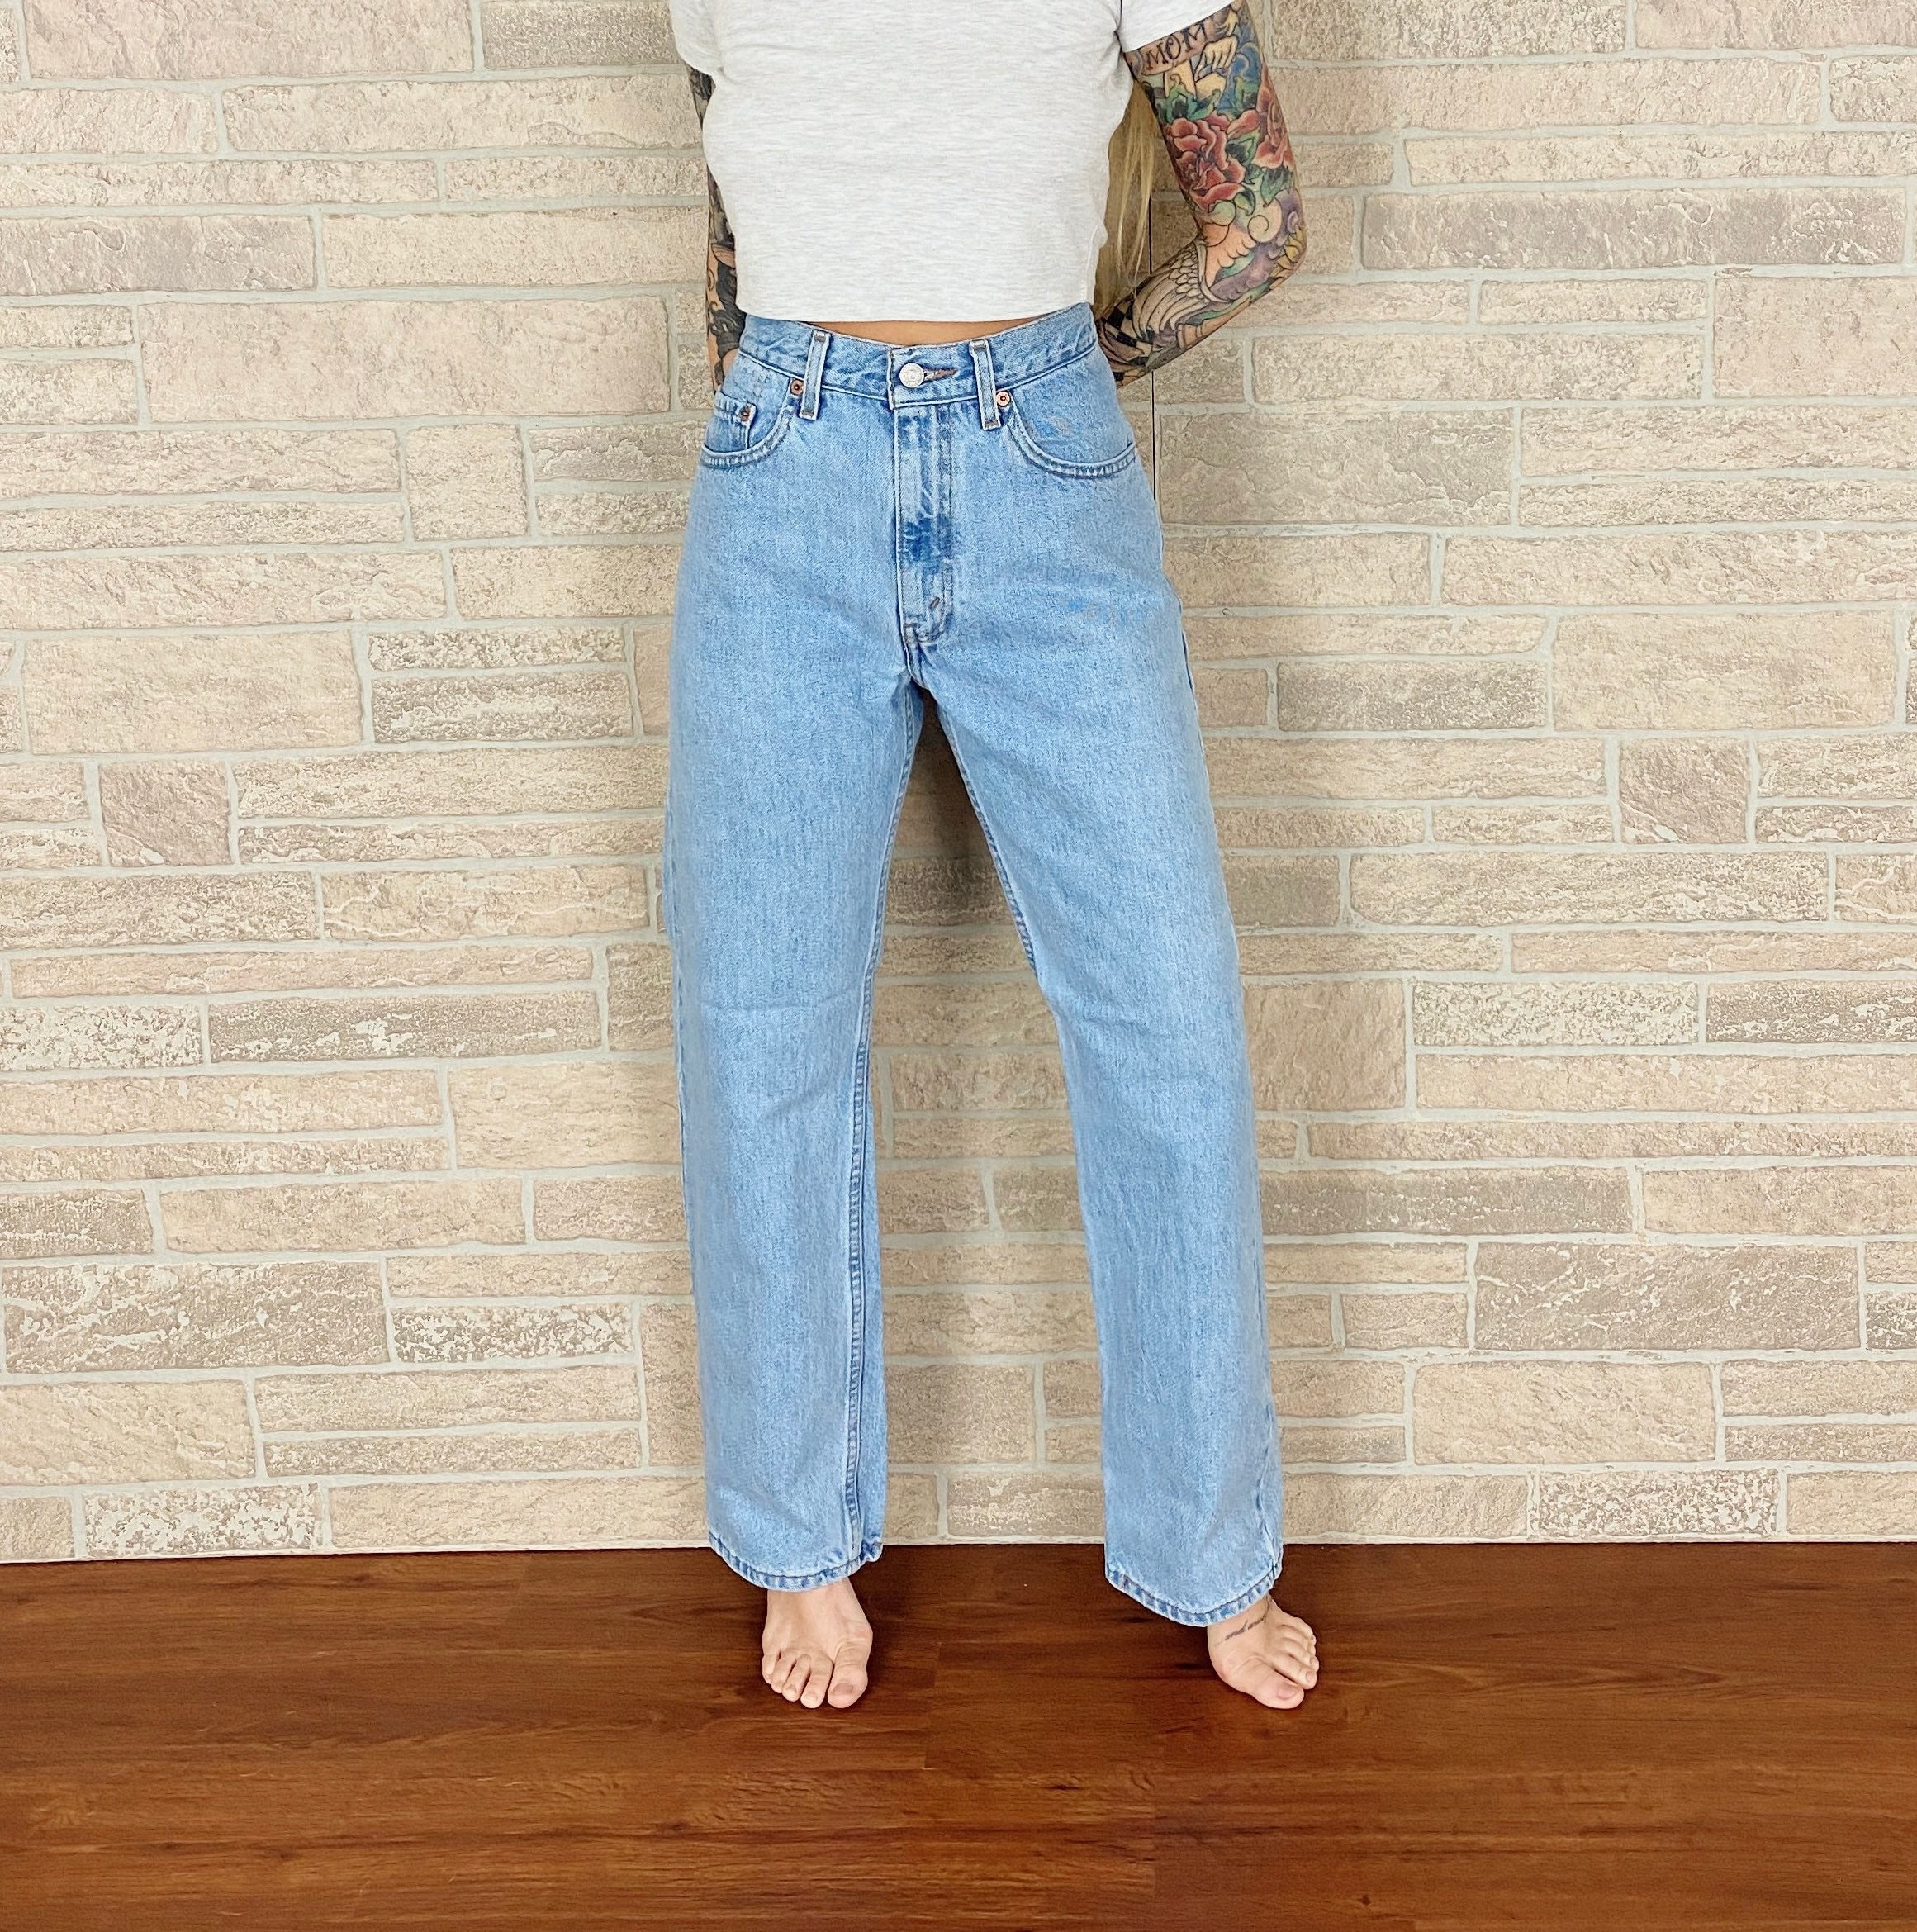 Levi's 505 Vintage Jeans / Size 30